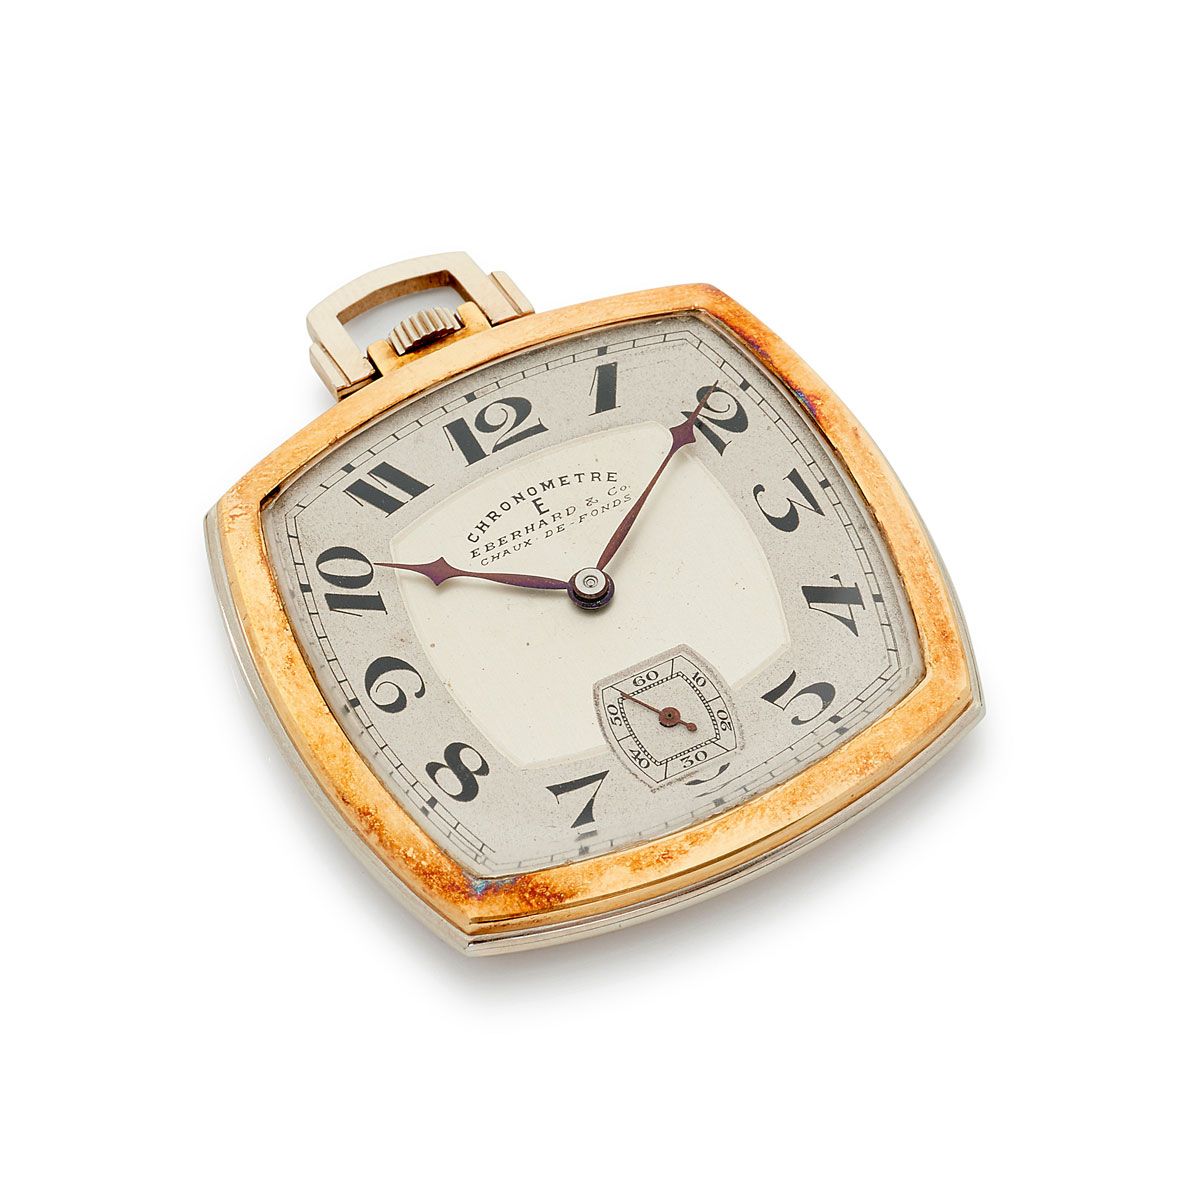 Null Eberhard, Chronomètre, n° 175662, vers 1930.

Une rare et belle montre de s&hellip;